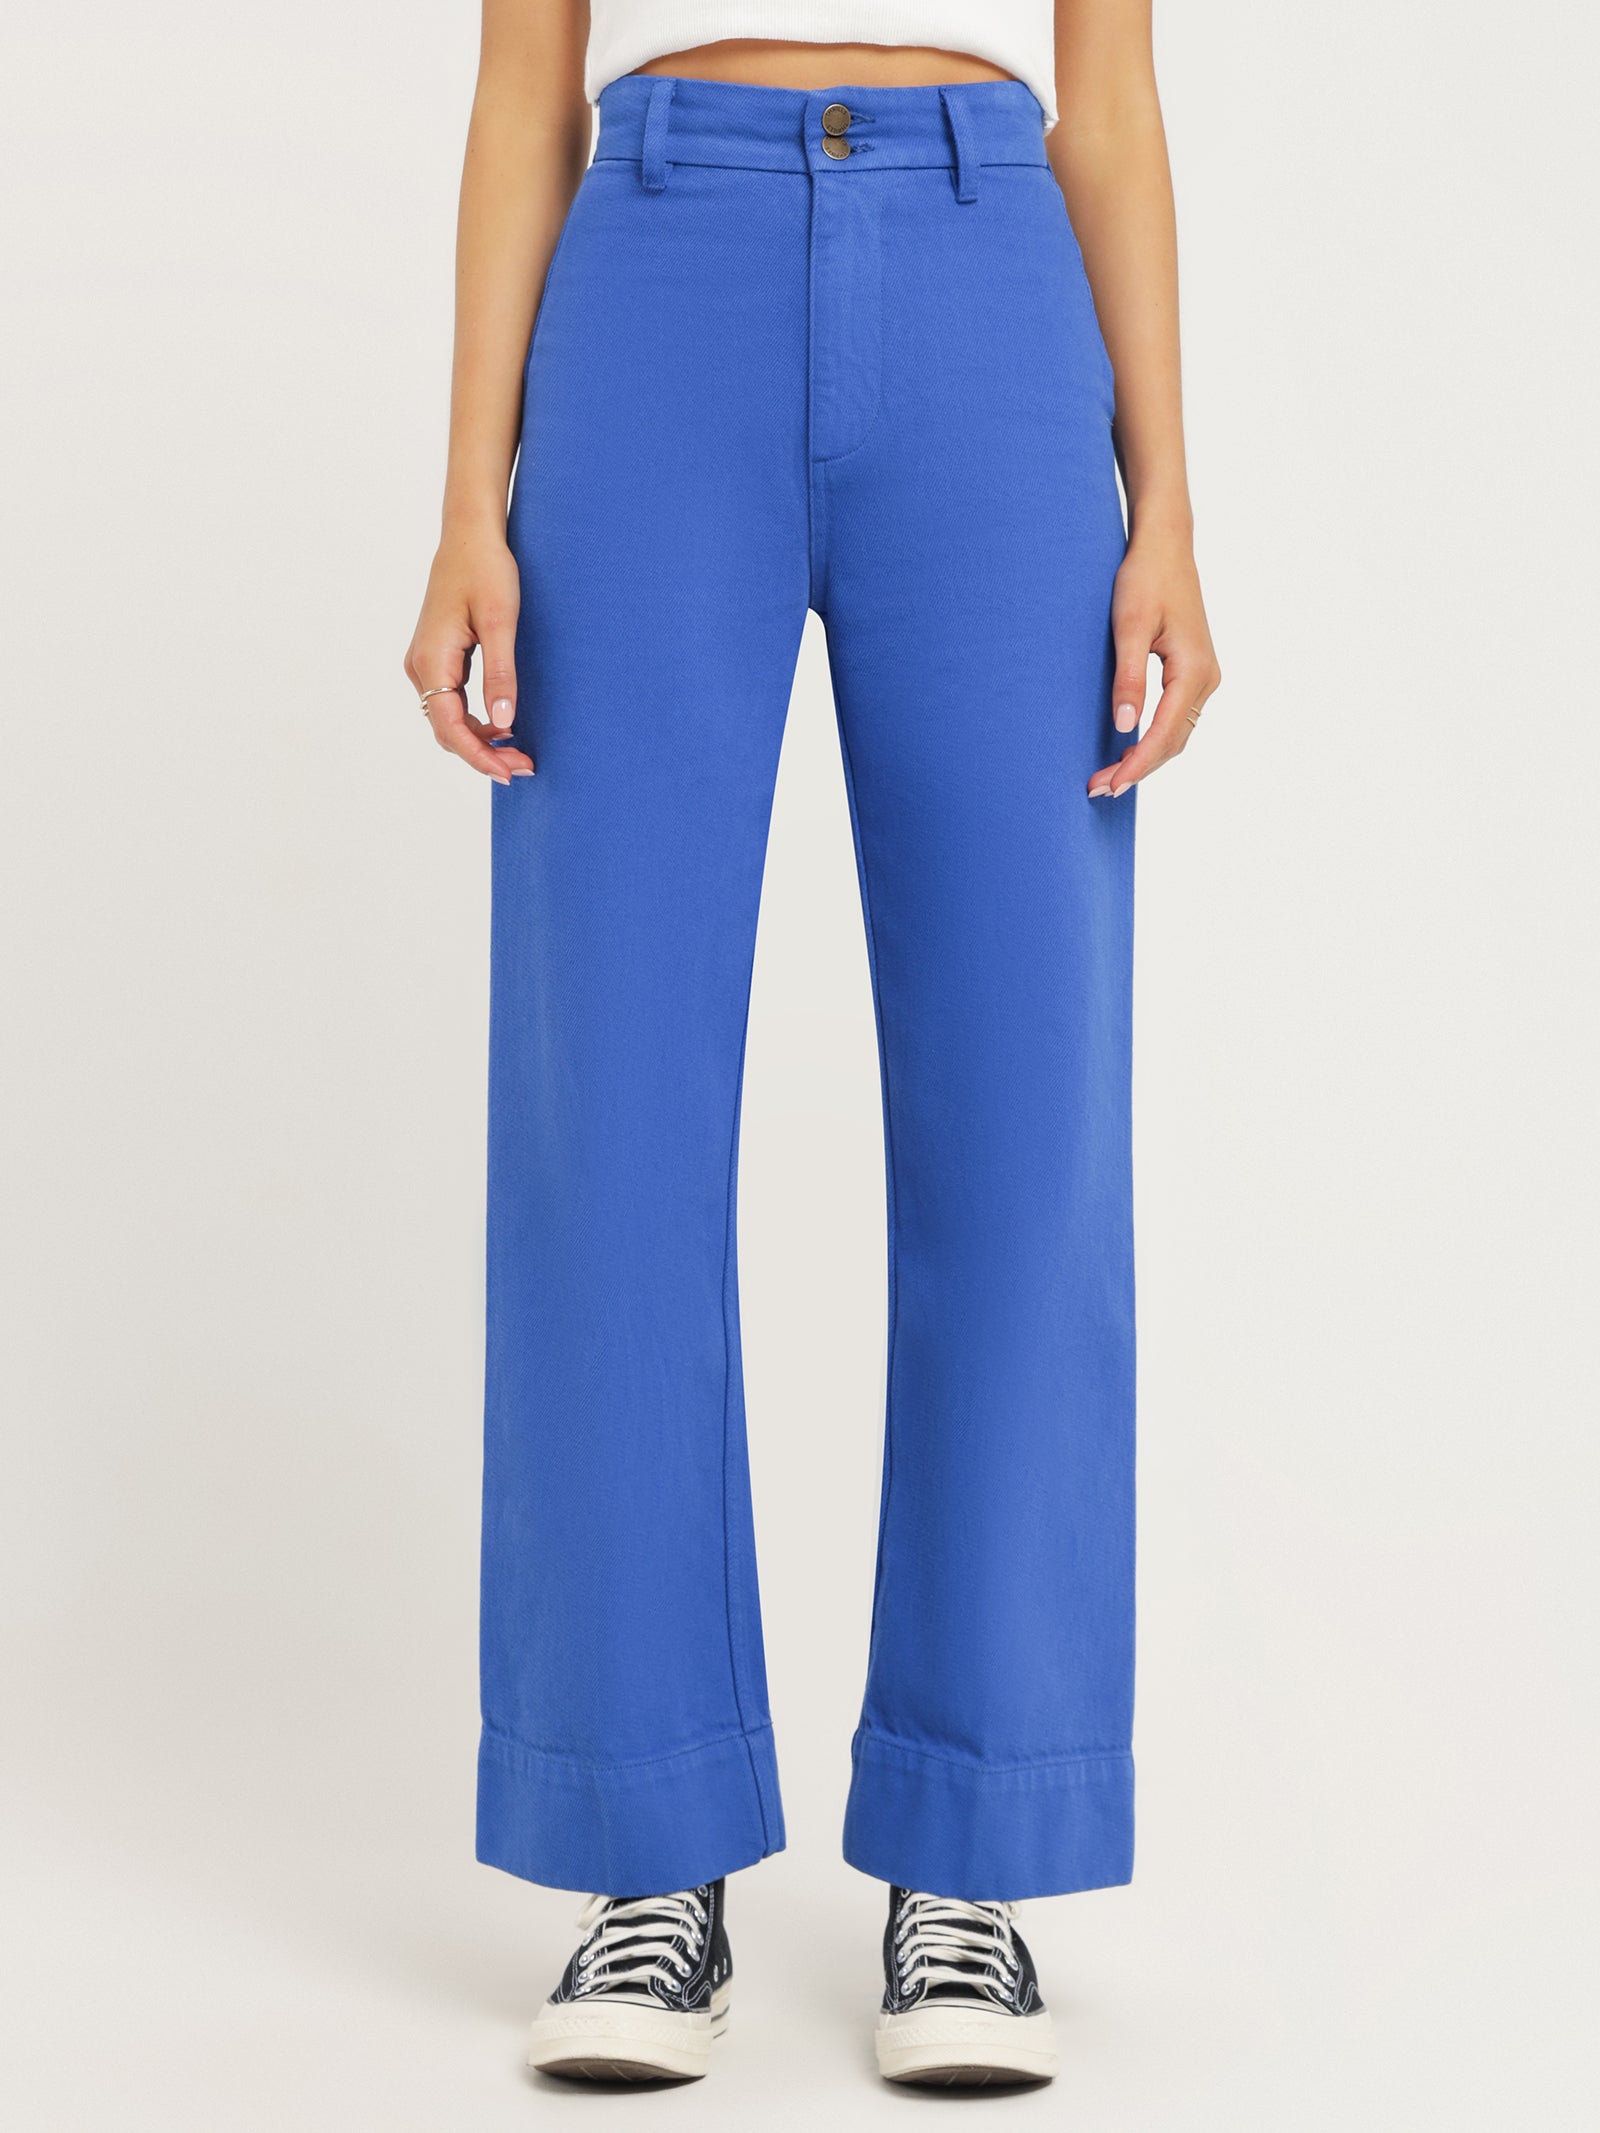 Belle Full Length Chino Pants in Lapis Blue